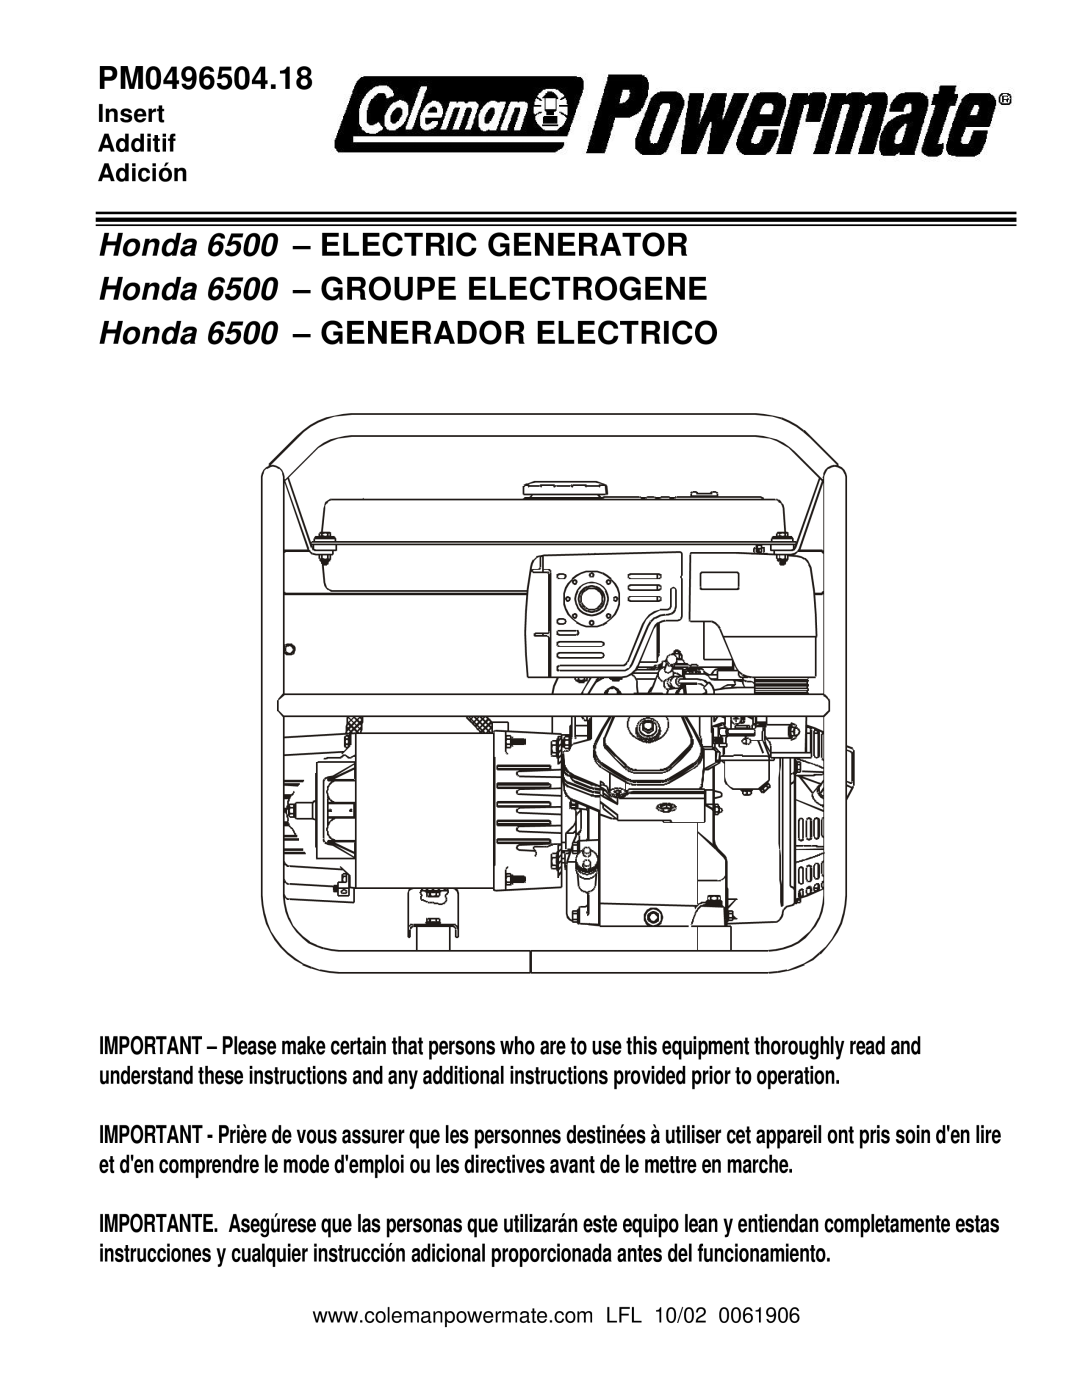 Powermate PM0496504.18 manual Honda 6500 - ELECTRIC GENERATOR Honda 6500 - GROUPE ELECTROGENE, Insert Additif Adición 